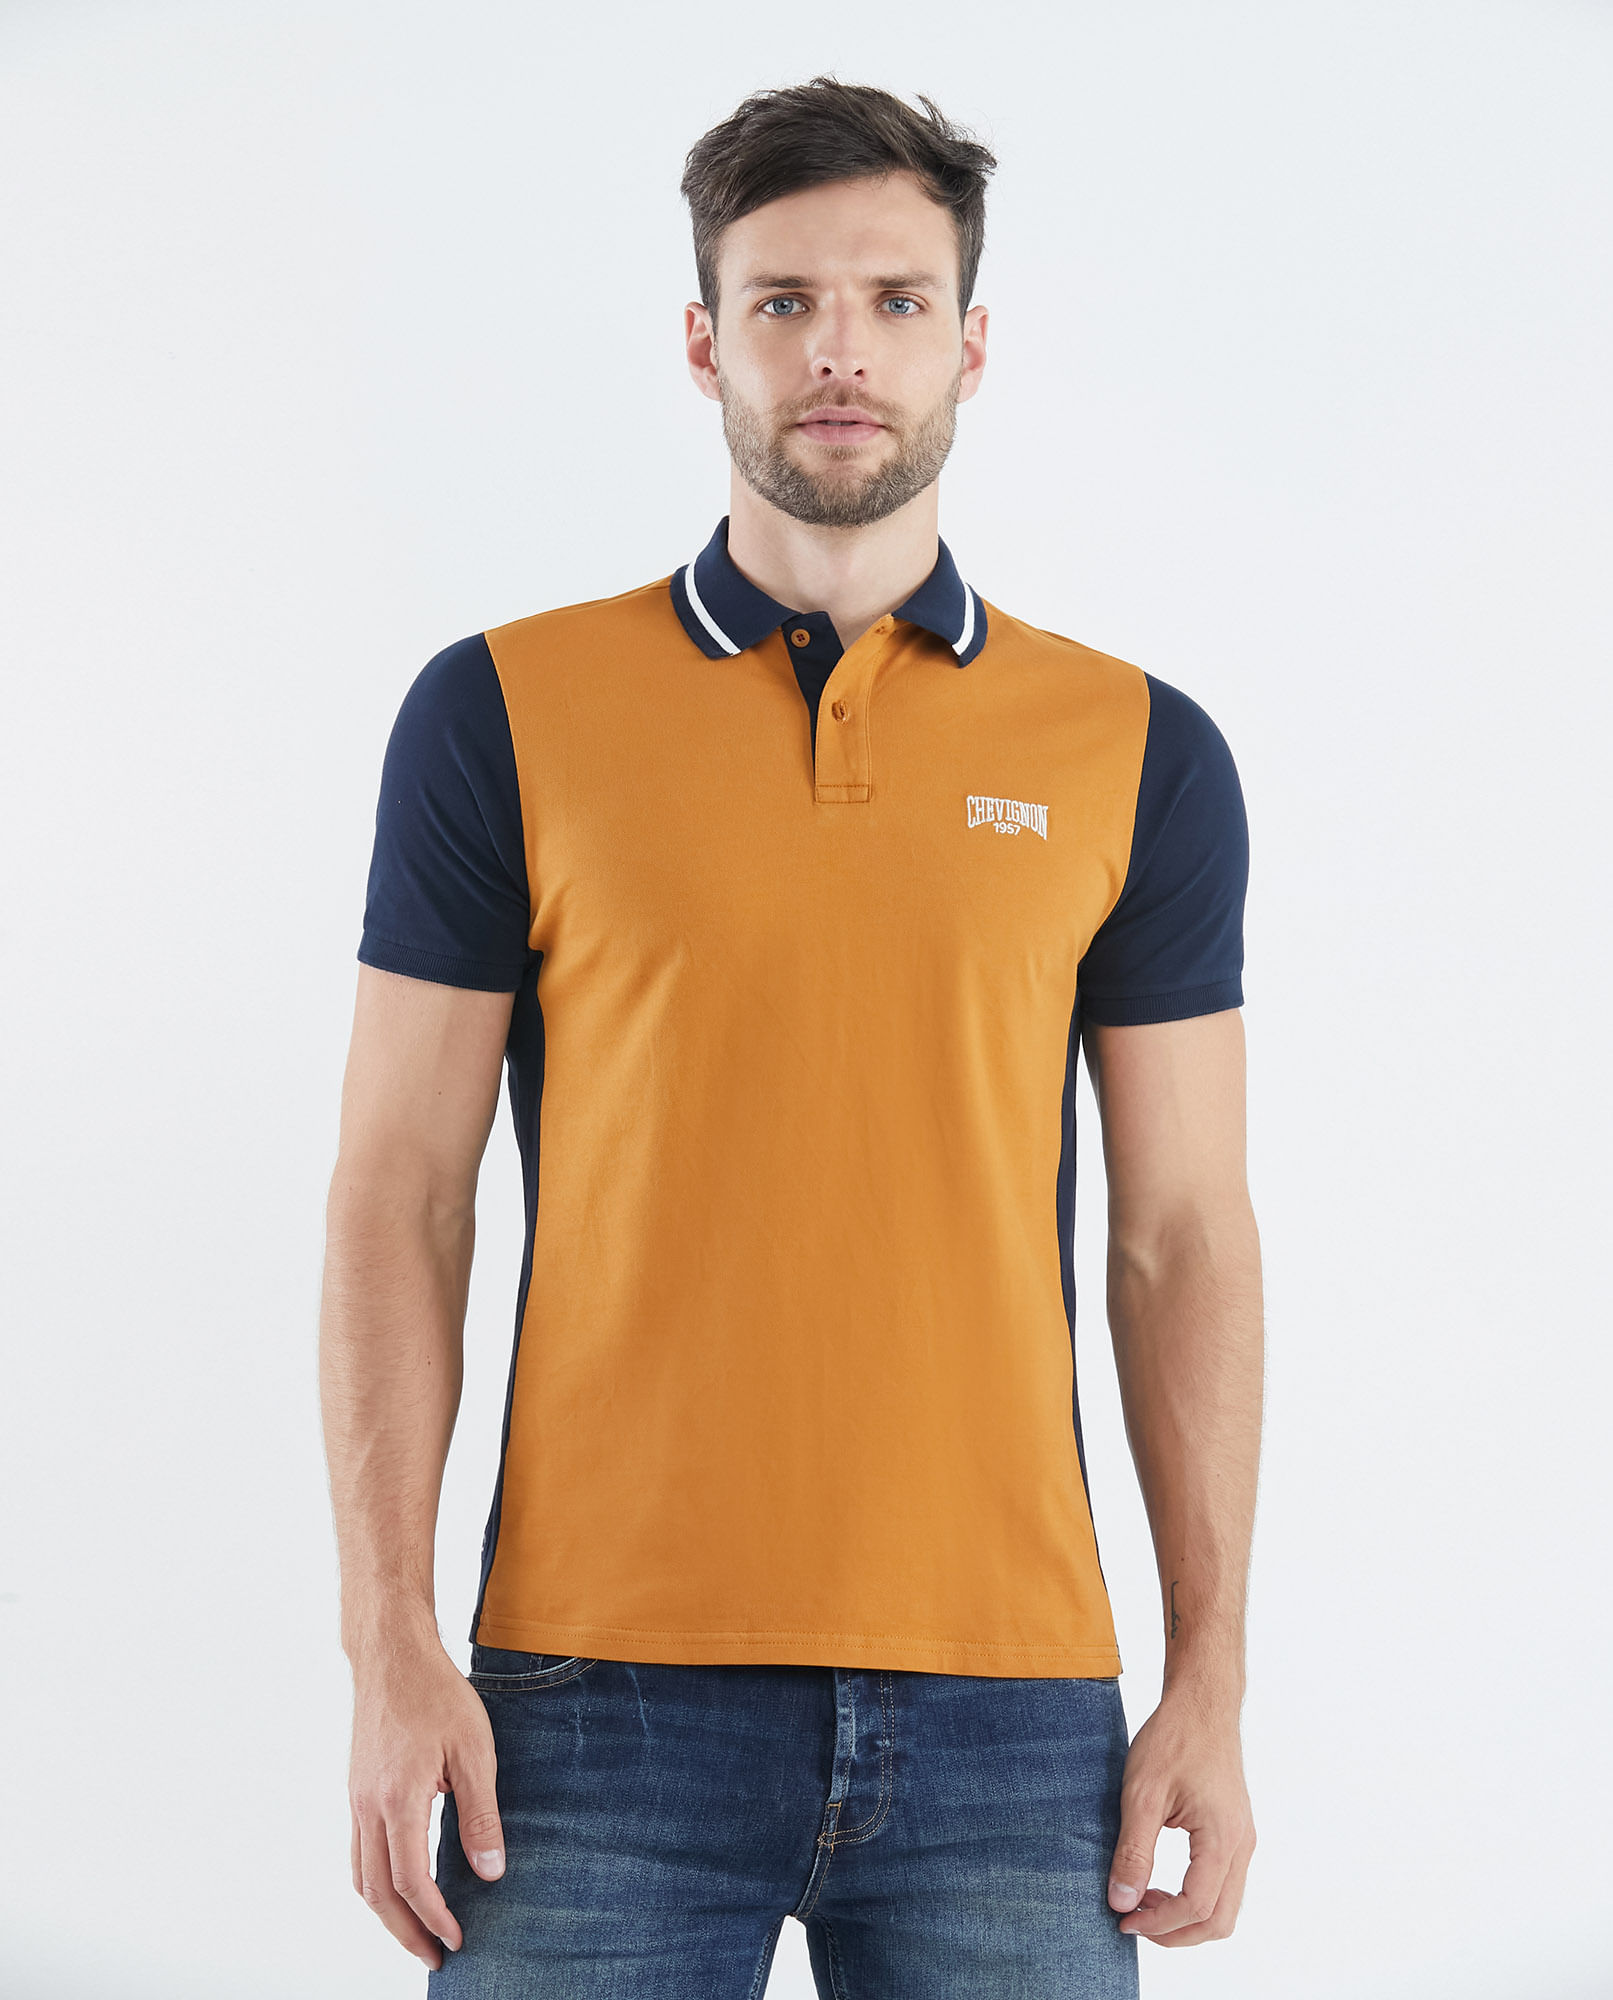 Camiseta de Hombre Tipo Polo, Slim Corta - Bloque de Color | Tienda